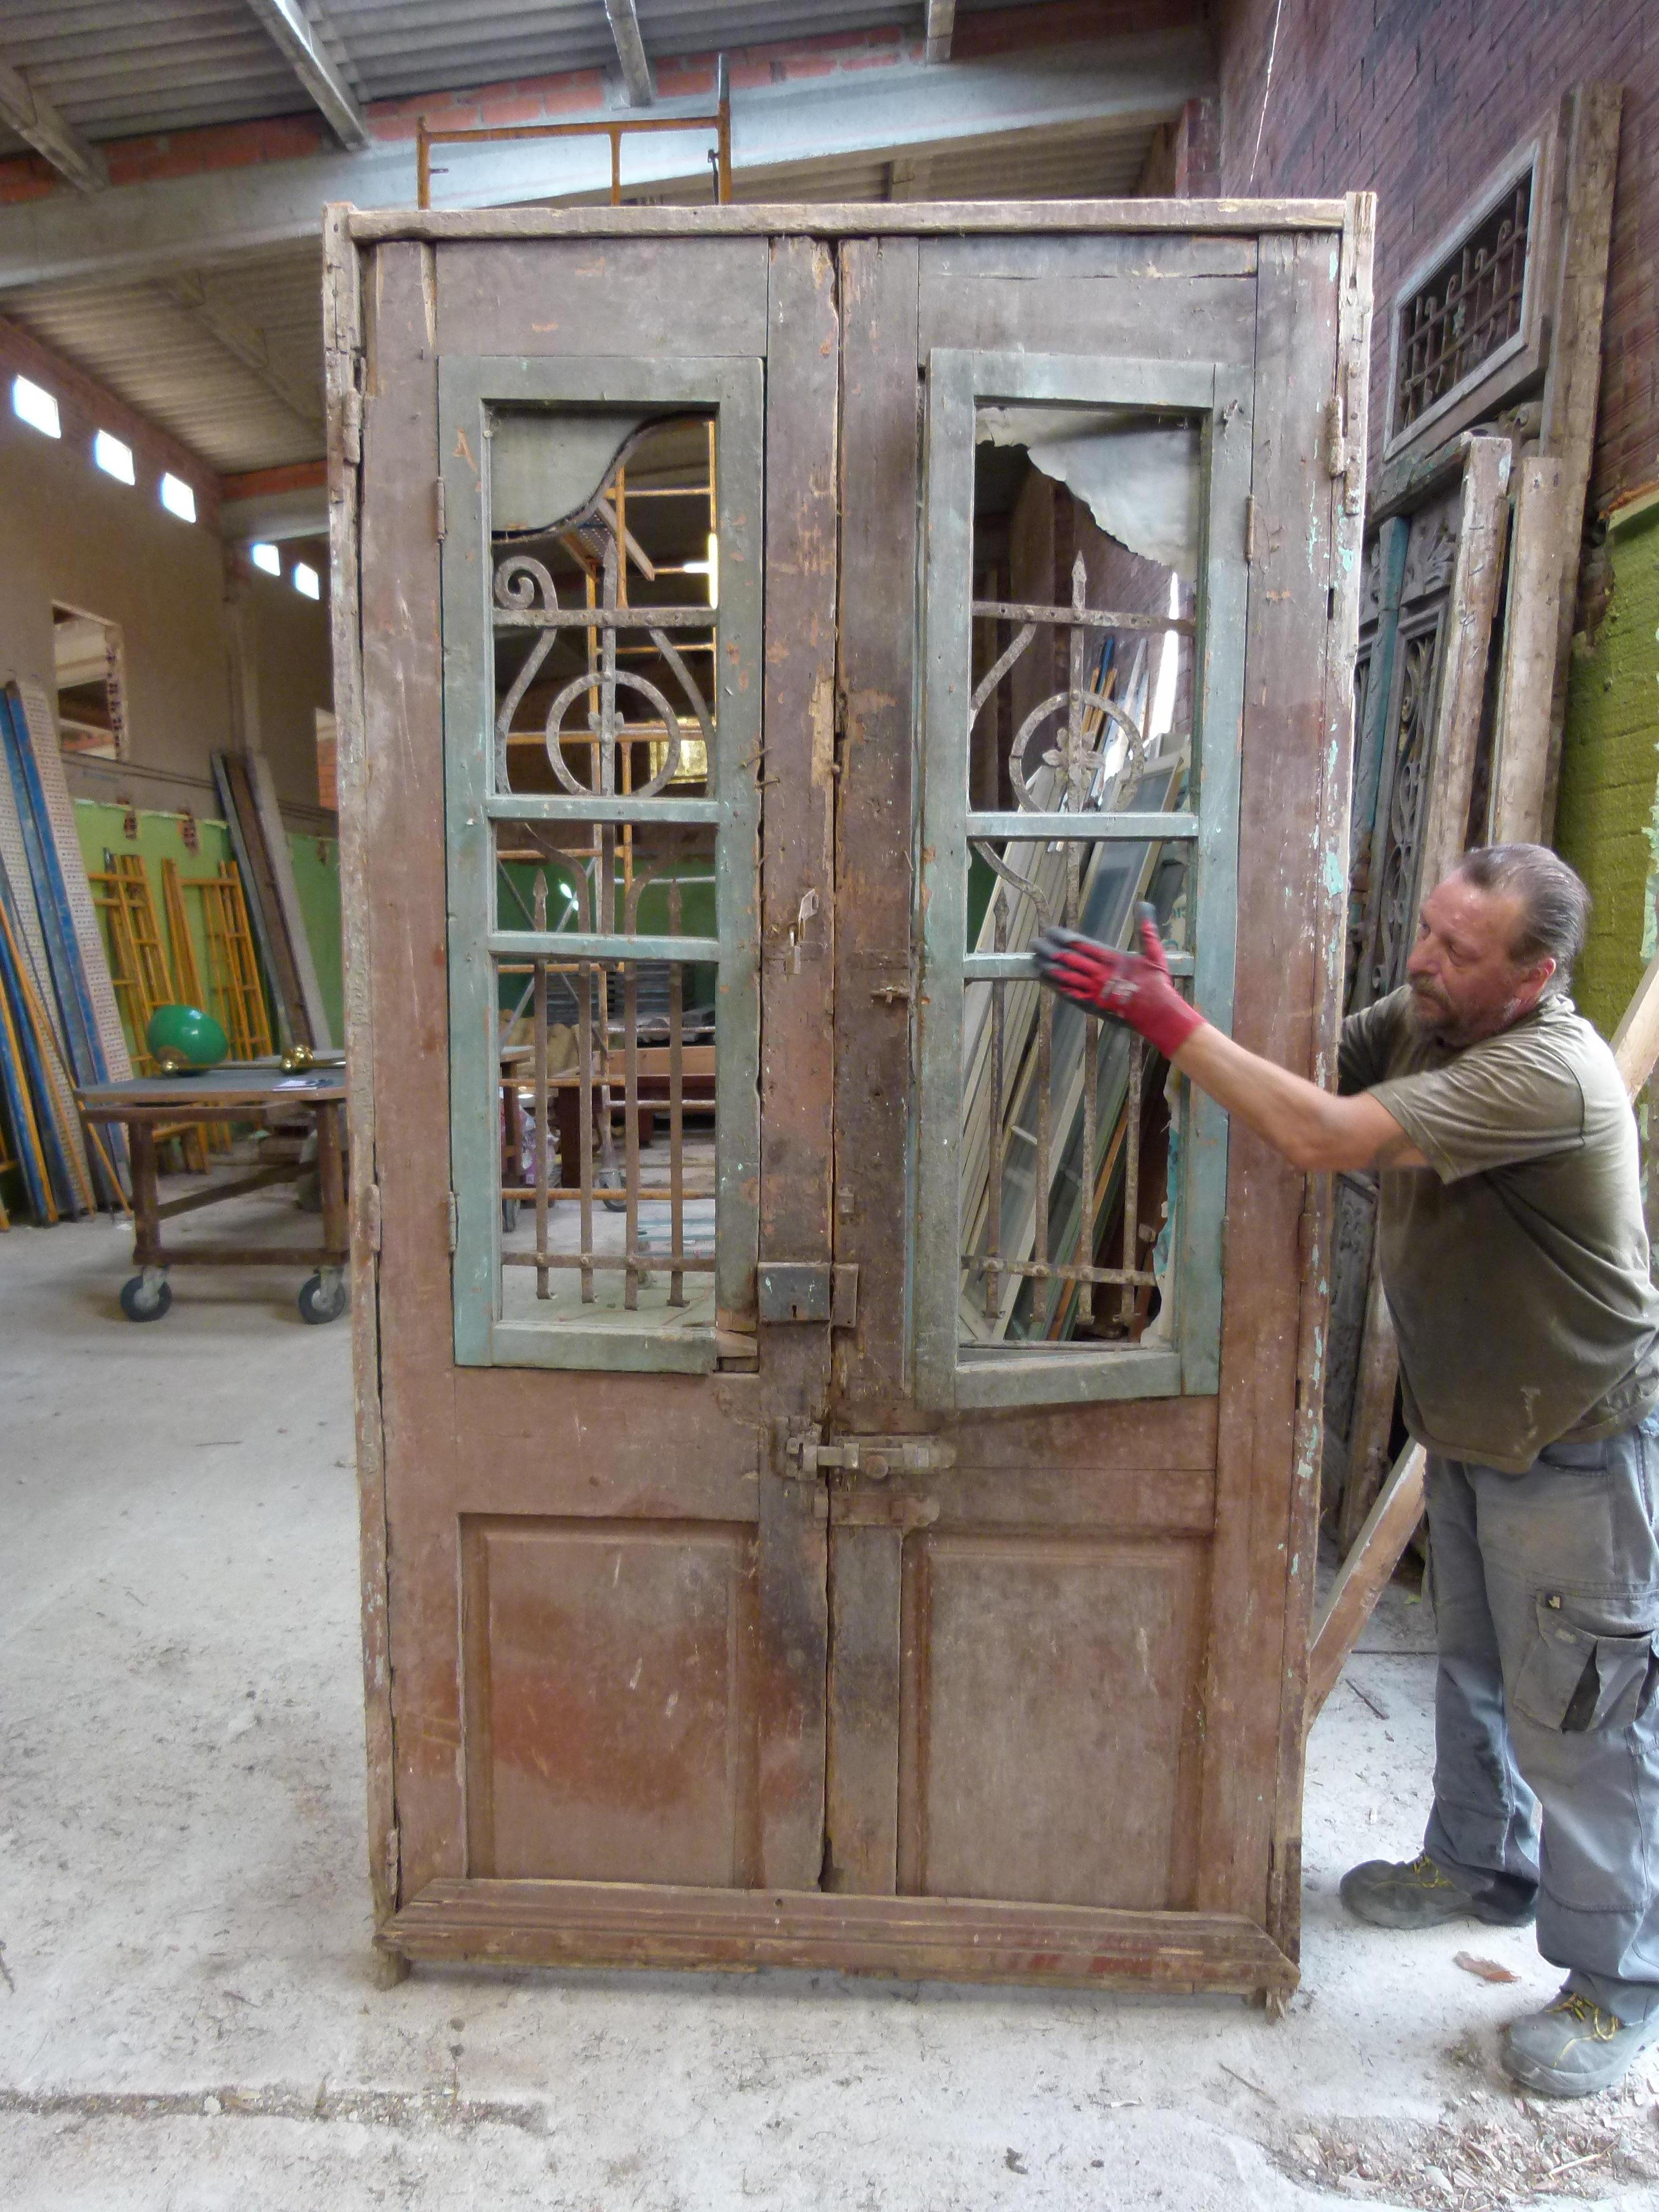 Doppelte Haustür aus dem 19. Jahrhundert mit Patina im Jugendstil aus Katalonien, Spanien.
 Geschnitztes Holz und Gusseisen sind typisch für diese Zeit.
Die Tür ist eingerahmt und funktionsfähig, muss aber restauriert werden, da einige Teile